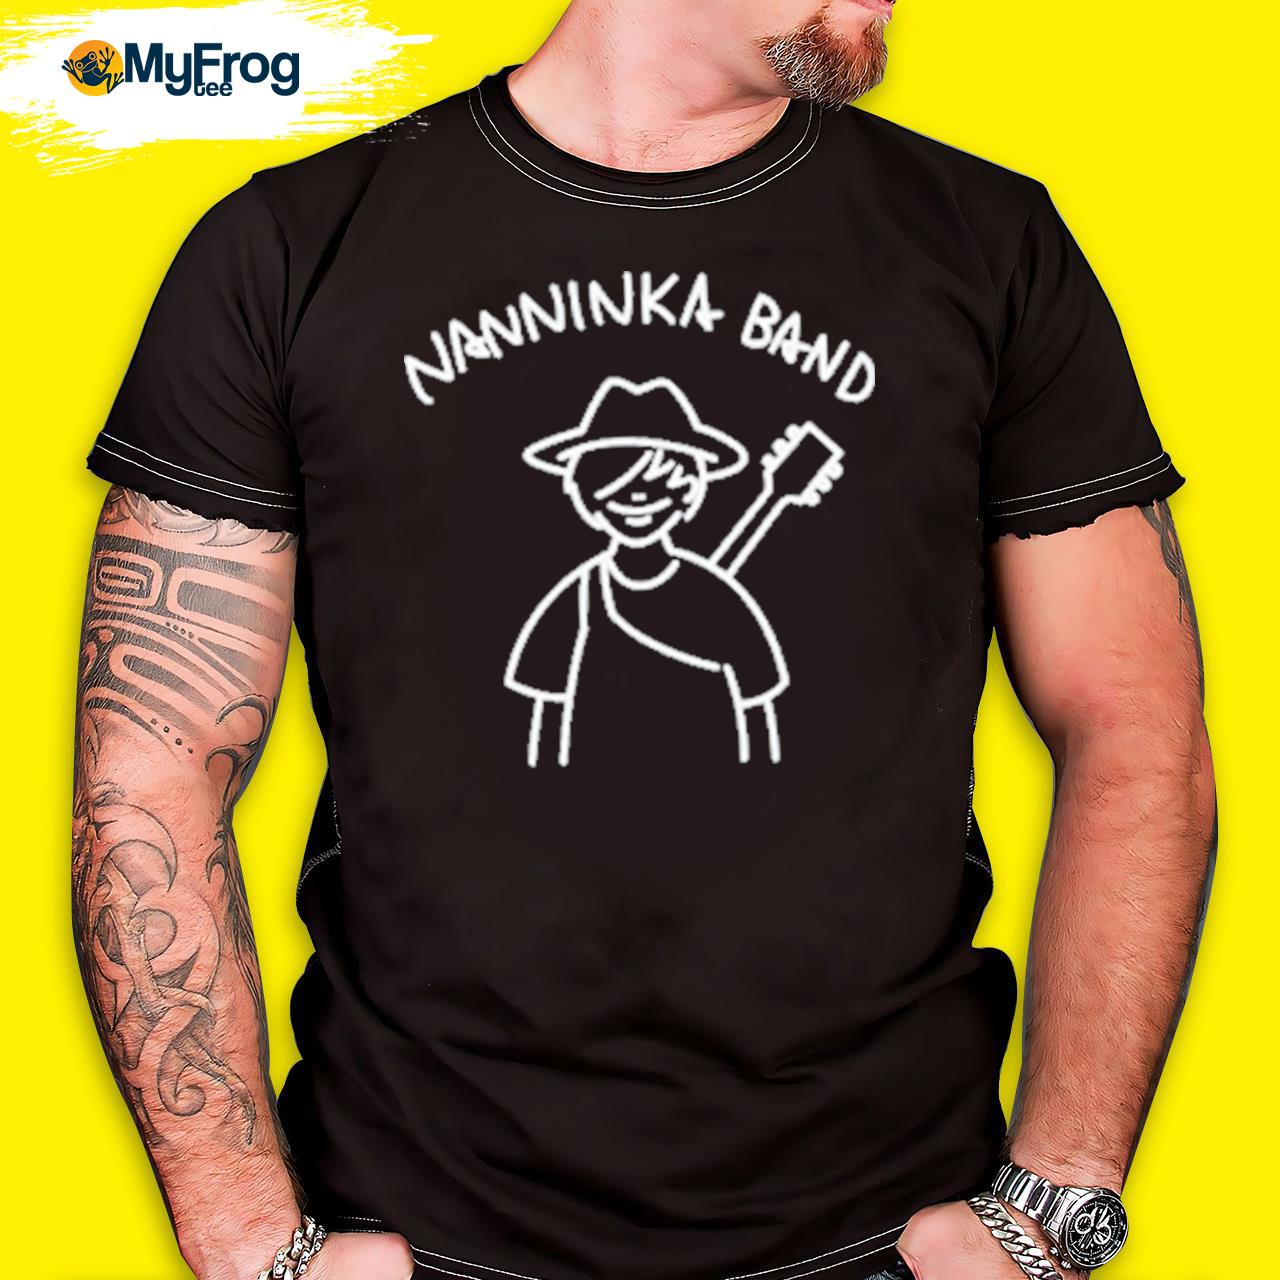 Nanninka band takuma10feet shirt